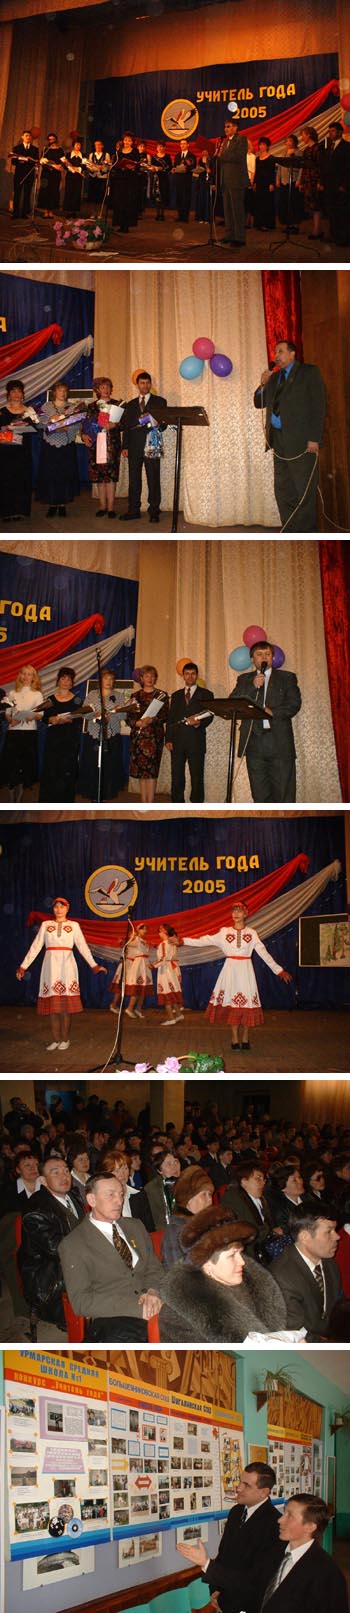 В Урмарах чествовали победителей районных конкурсов "Учитель года - 2005" и "Учительские династии - 2005"